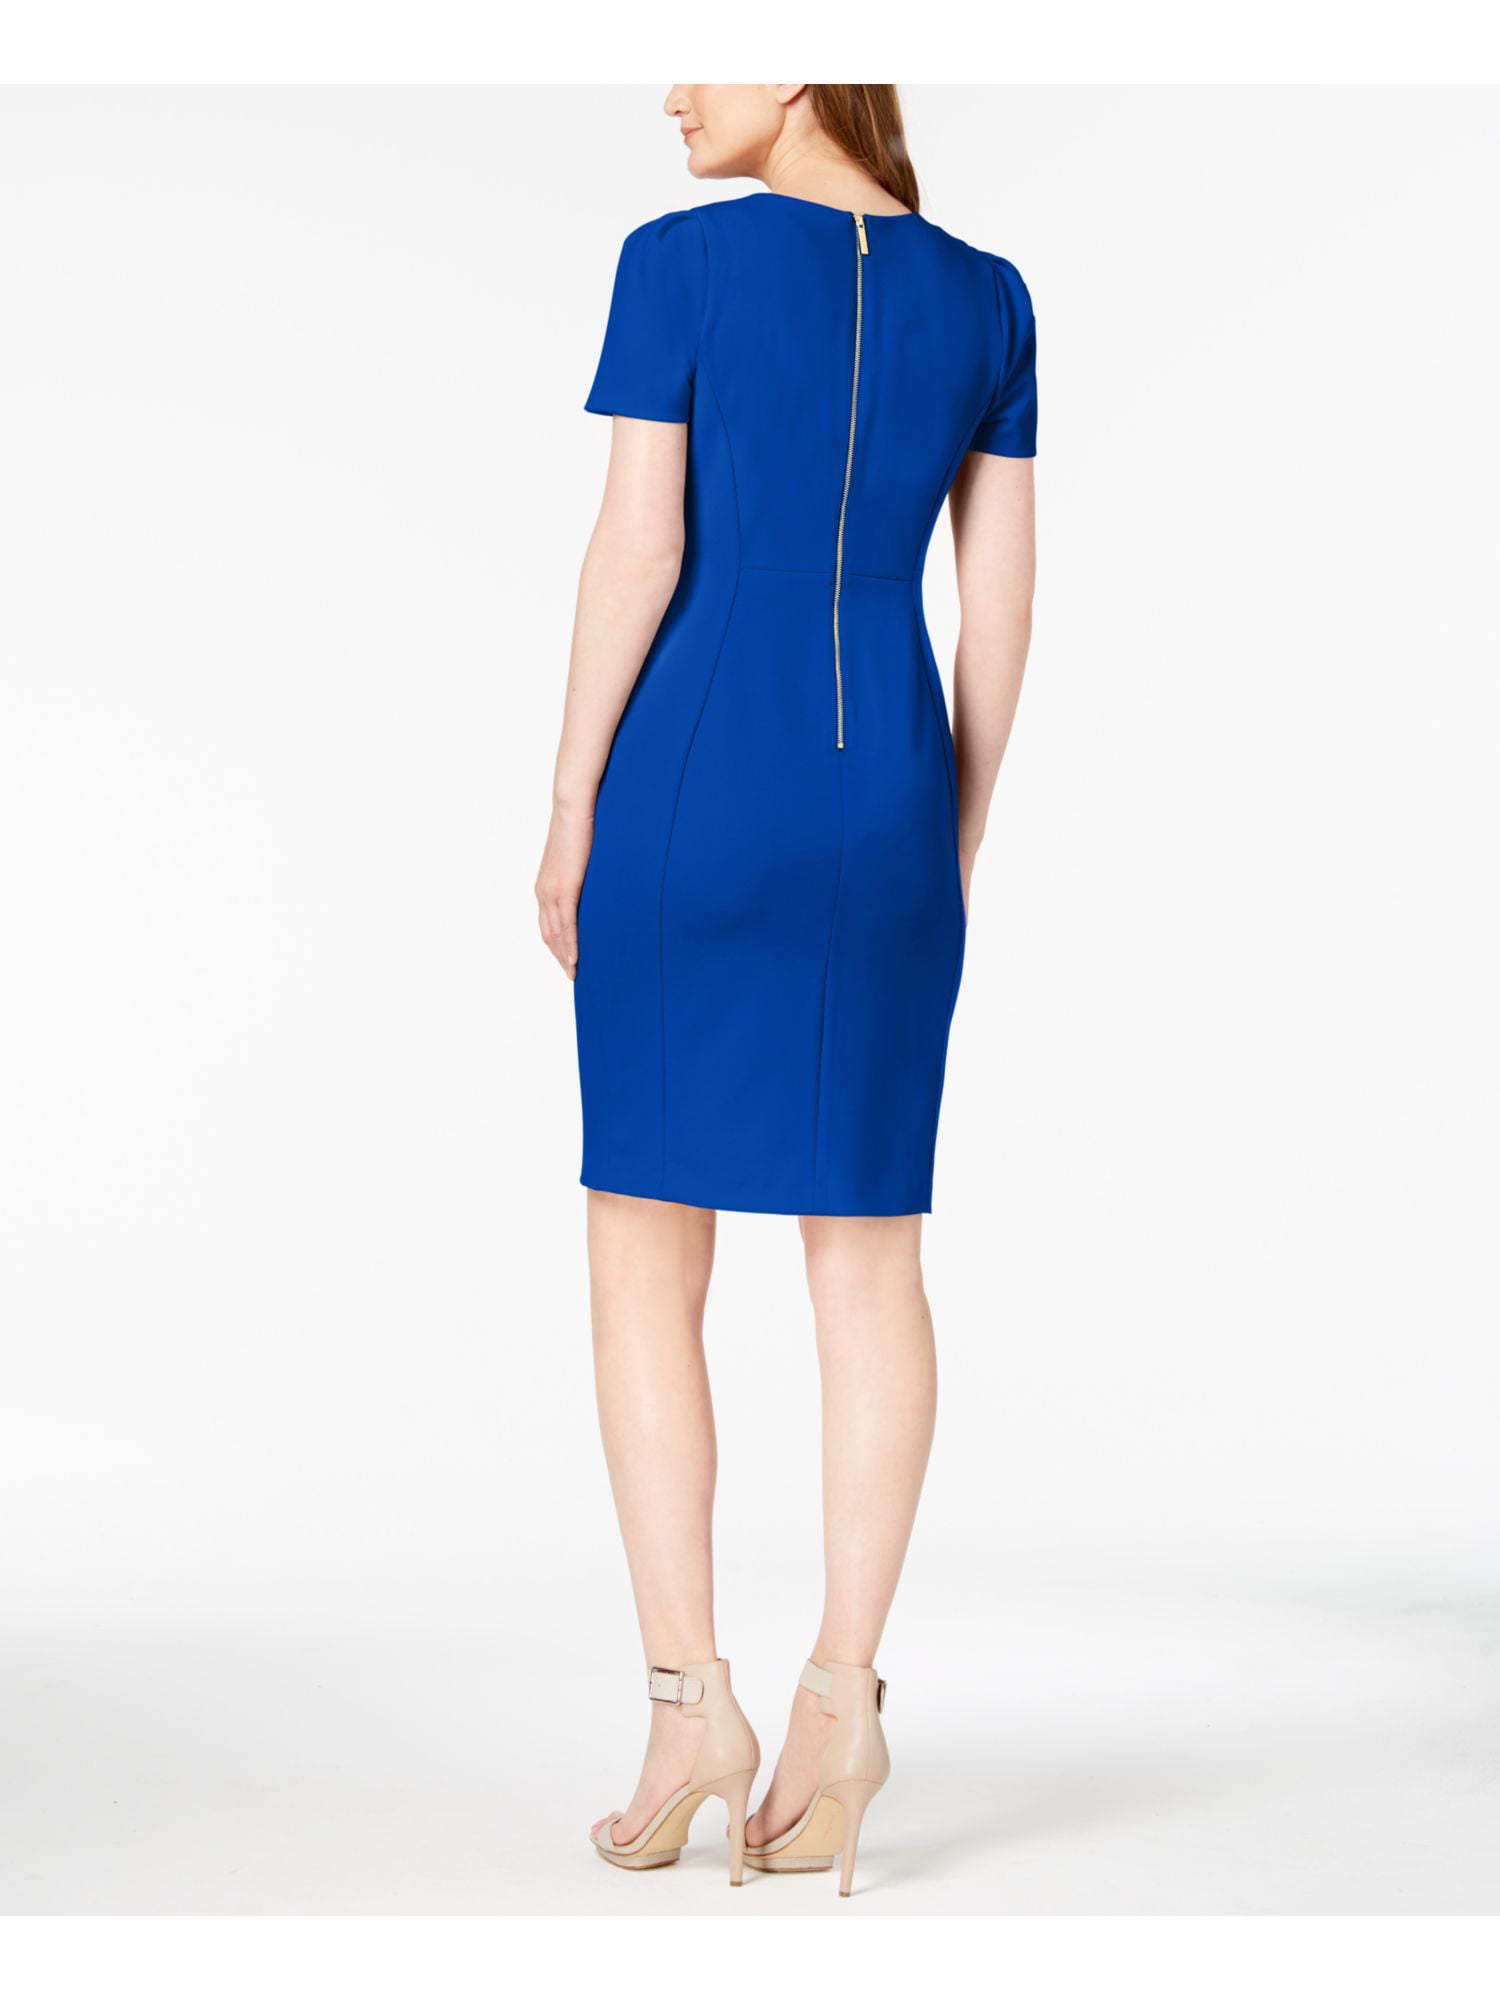 Calvin Klein Womens Office Wear Professional Wear to Work Dress Blue 6 -  